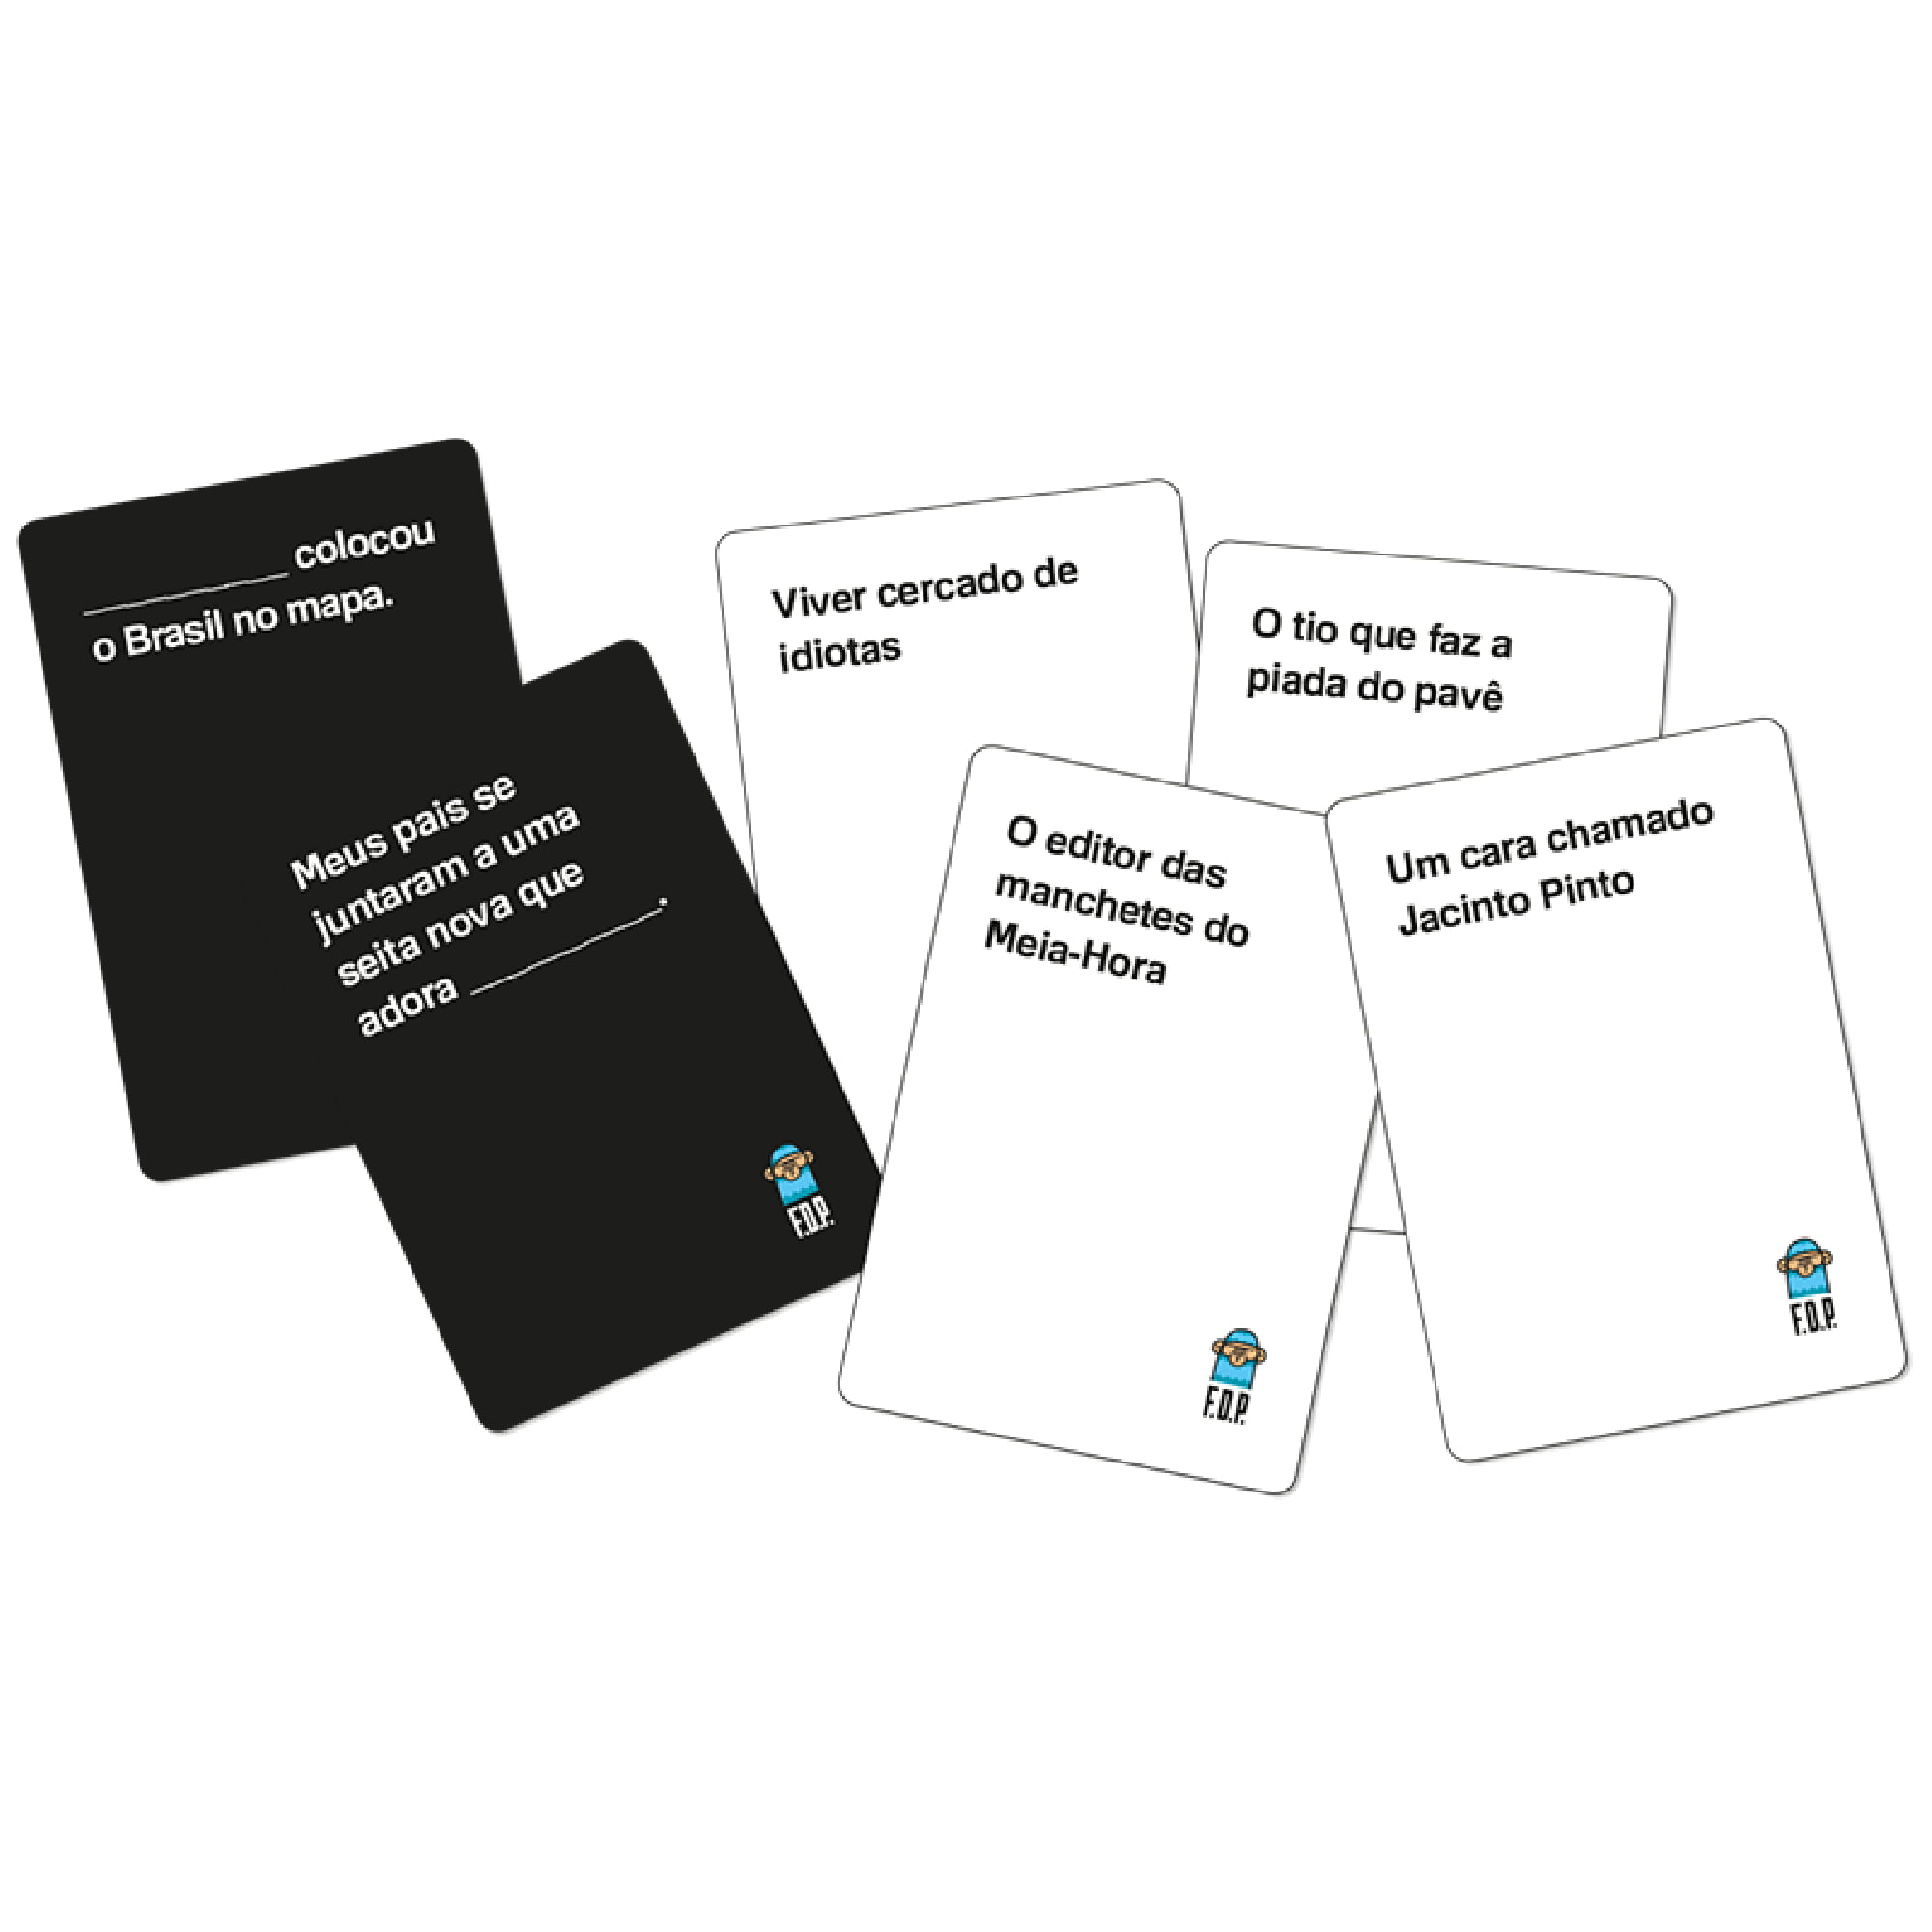 BlackCat Board Games - No Thanks! é um jogo de cartas competitivo